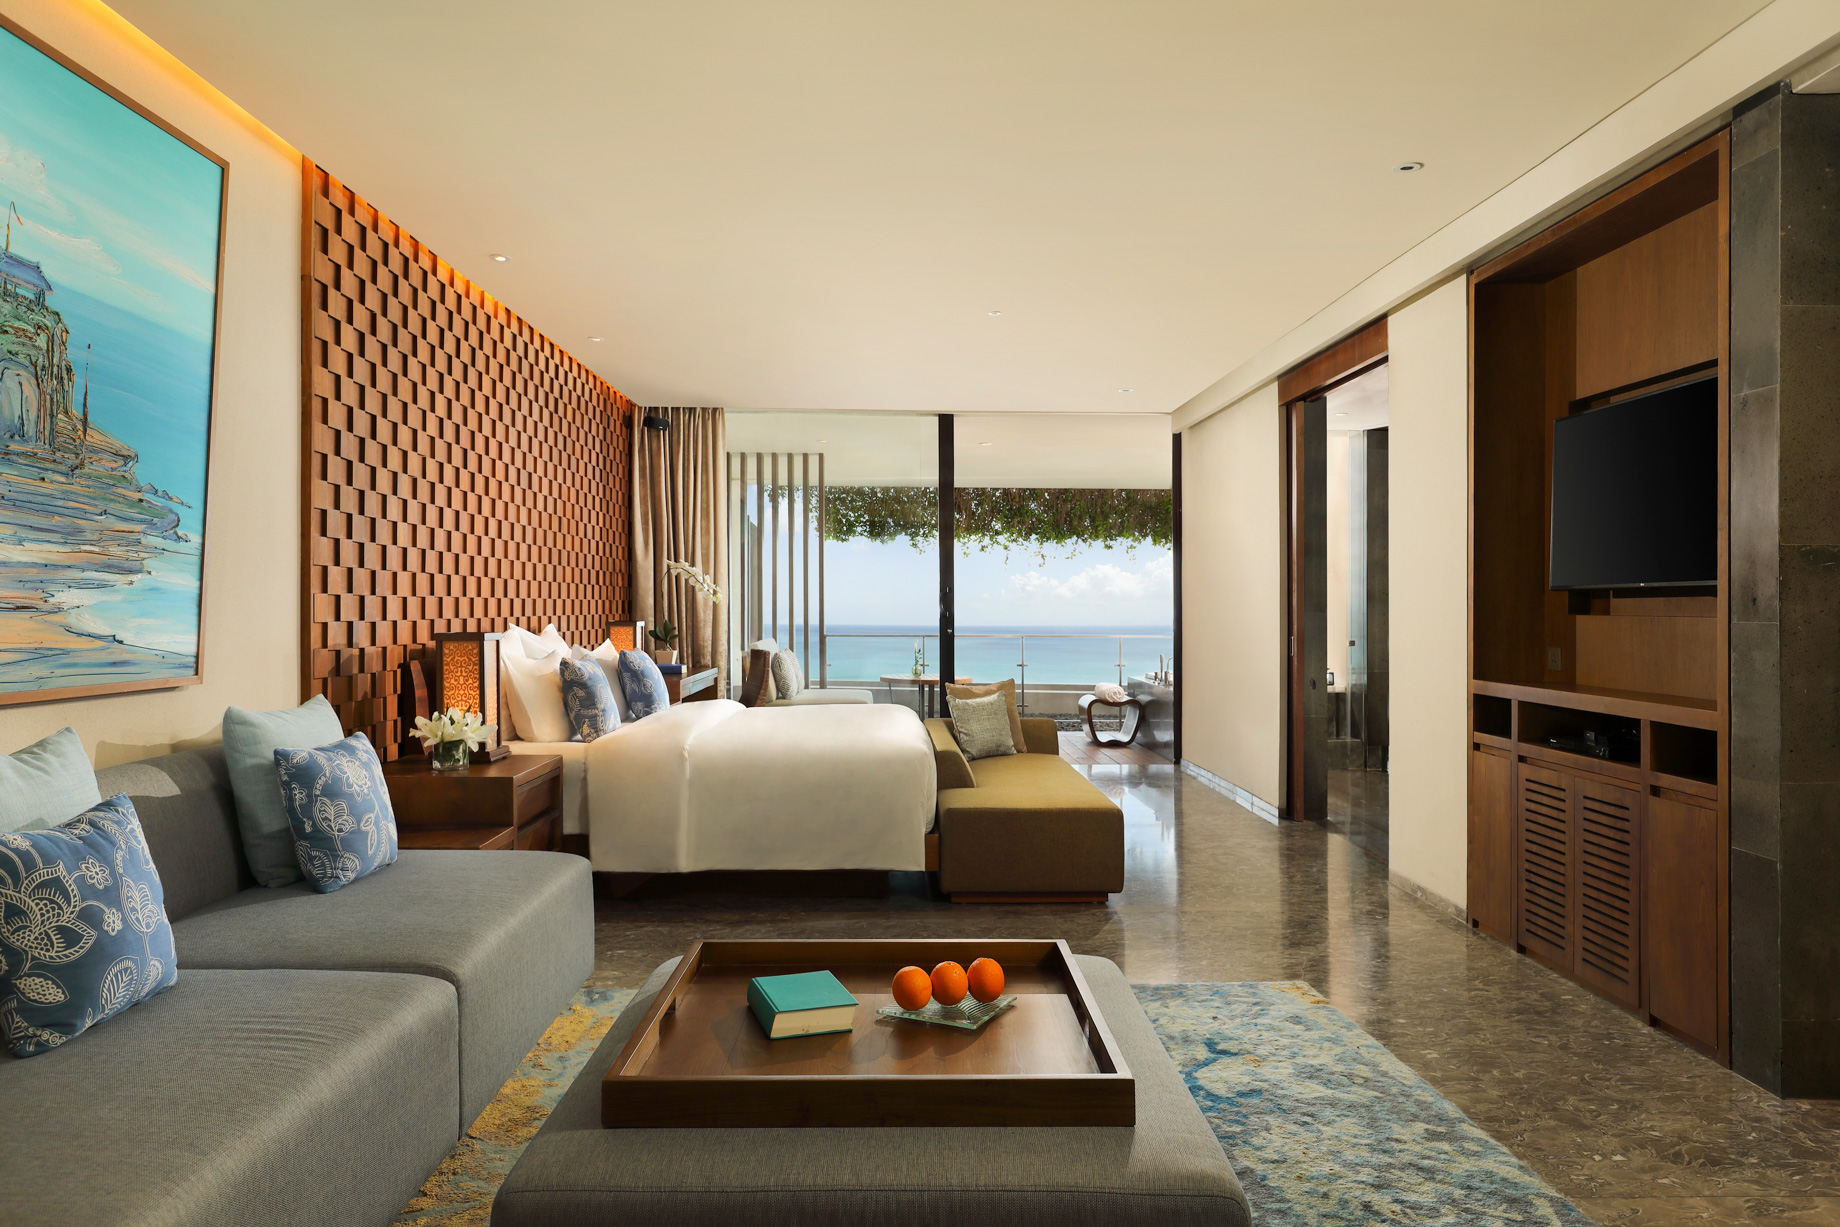 Anantara Uluwatu Bali Resort – Bali, Indonesia – Ocean View Suite